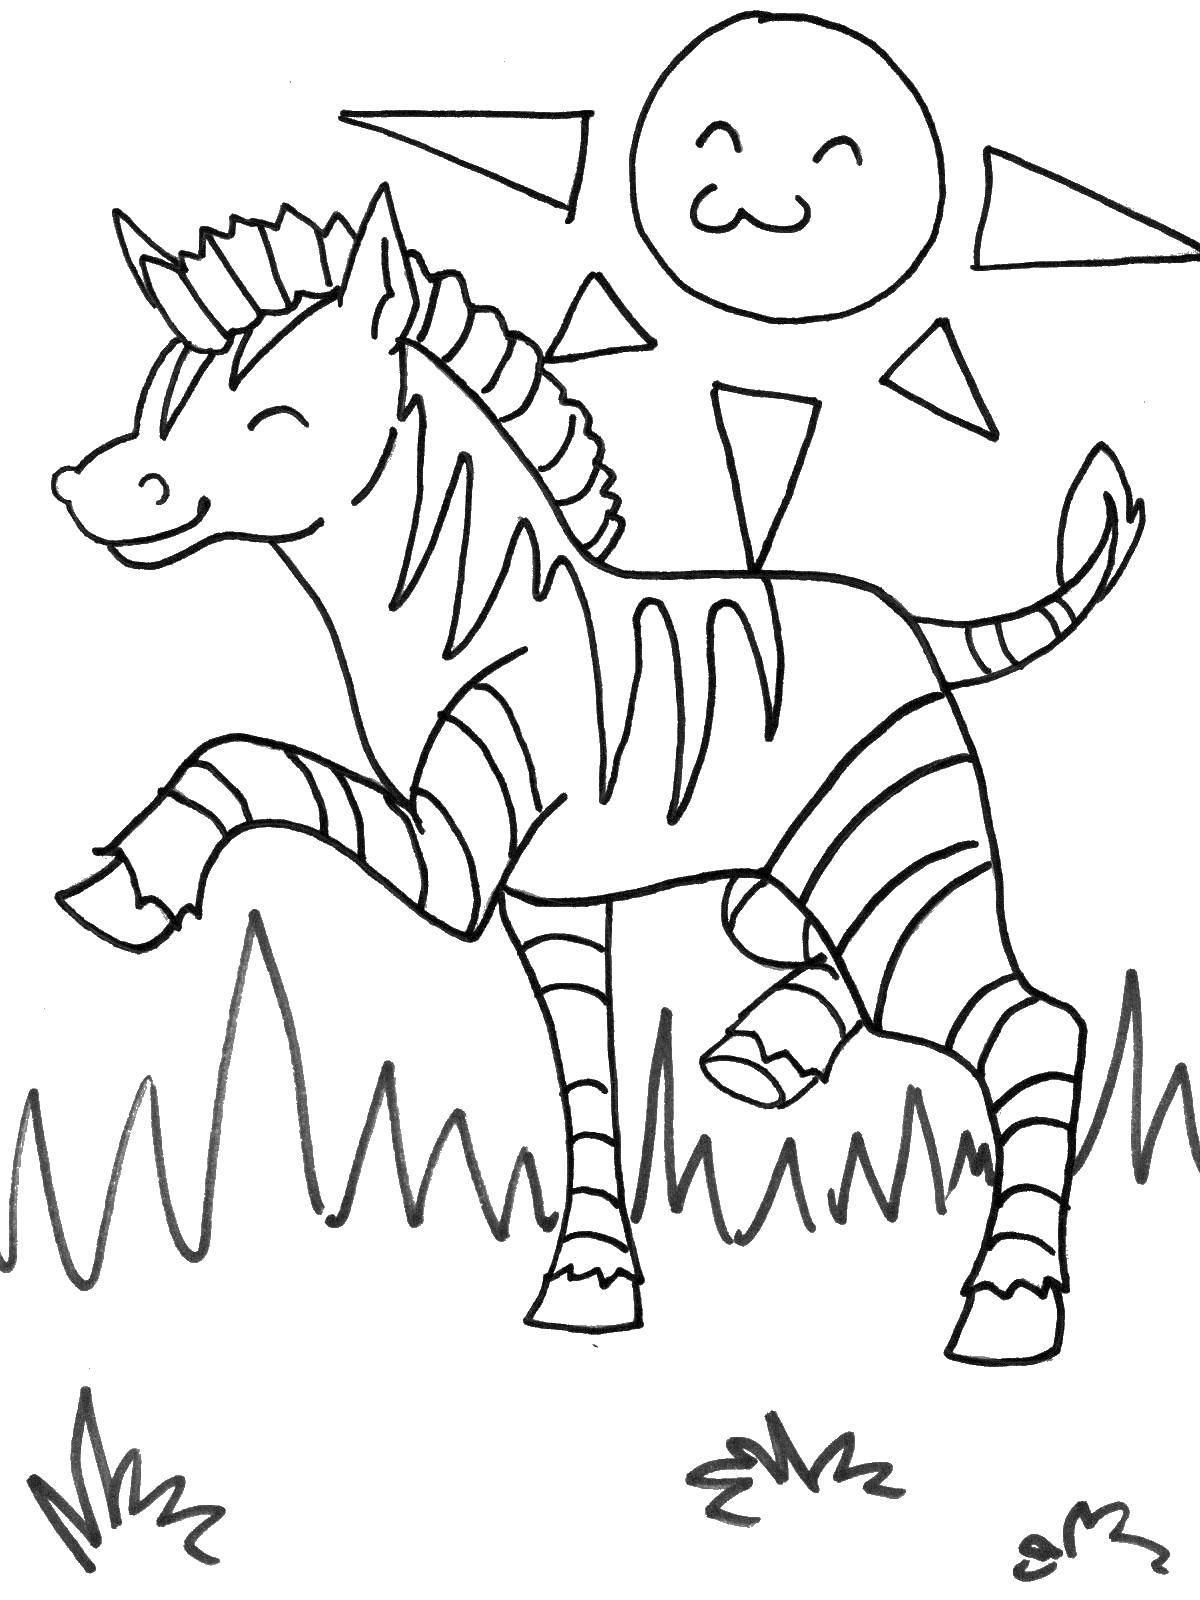 Название: Раскраска Зебра. Категория: Дикие животные. Теги: зебра.